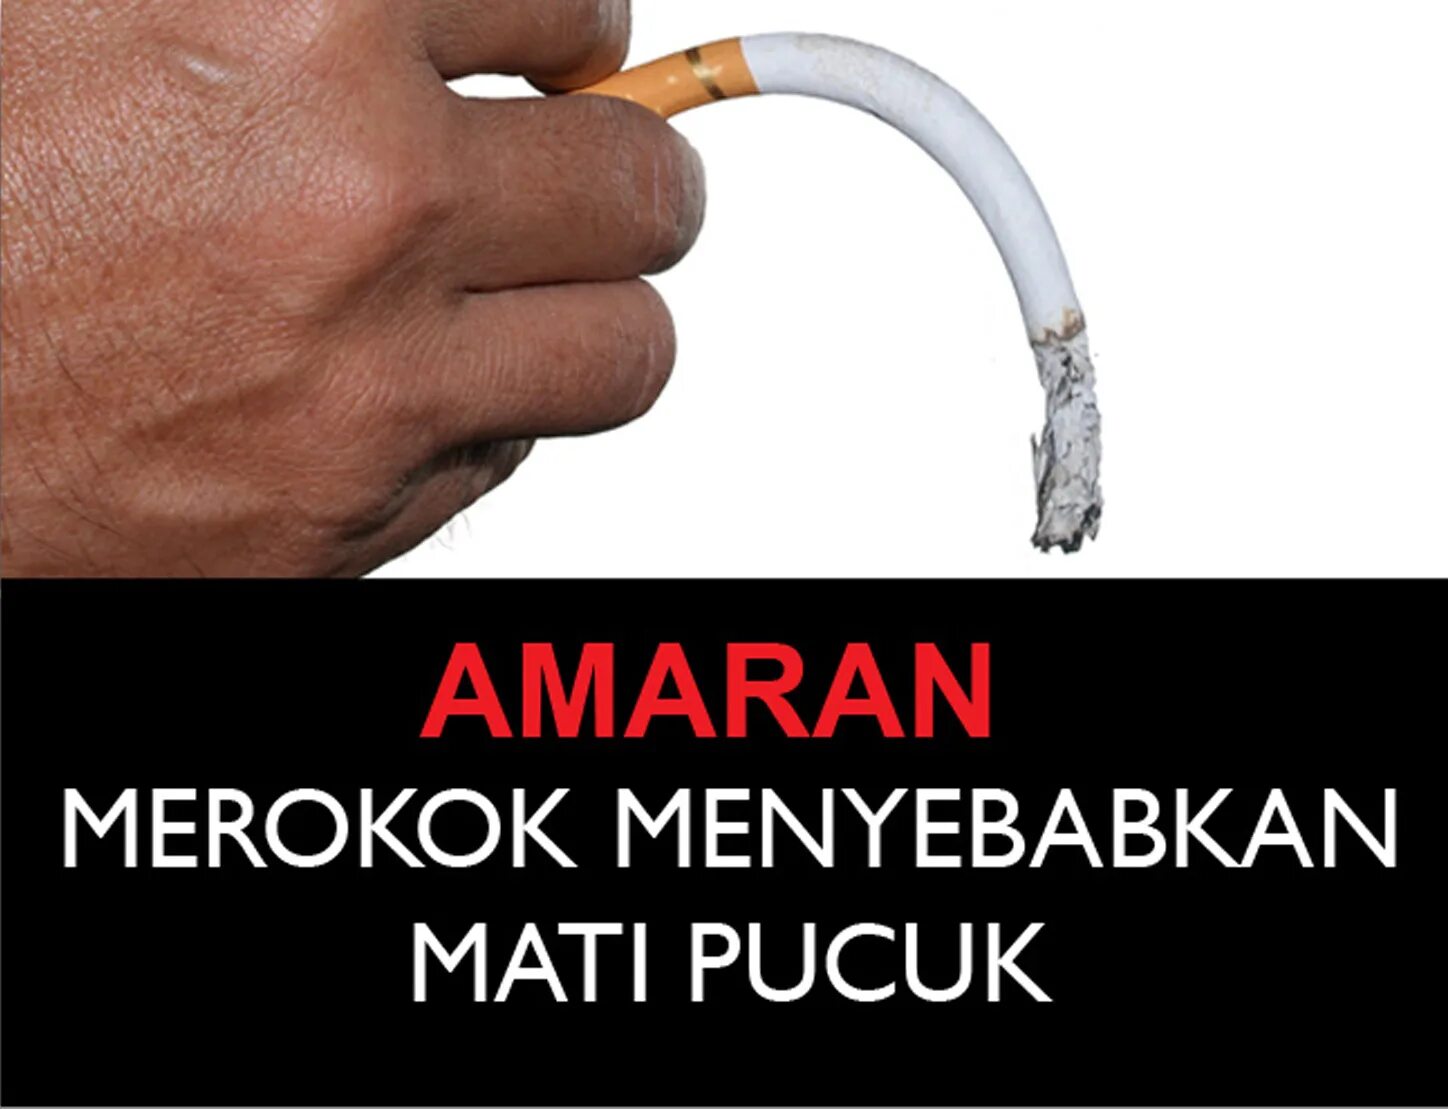 Курение причина импотенции. Курение вызывает импотенцию. Курение влияет на импотенцию. Курение влияет на потенцию у мужчин. Вызывает потенцию